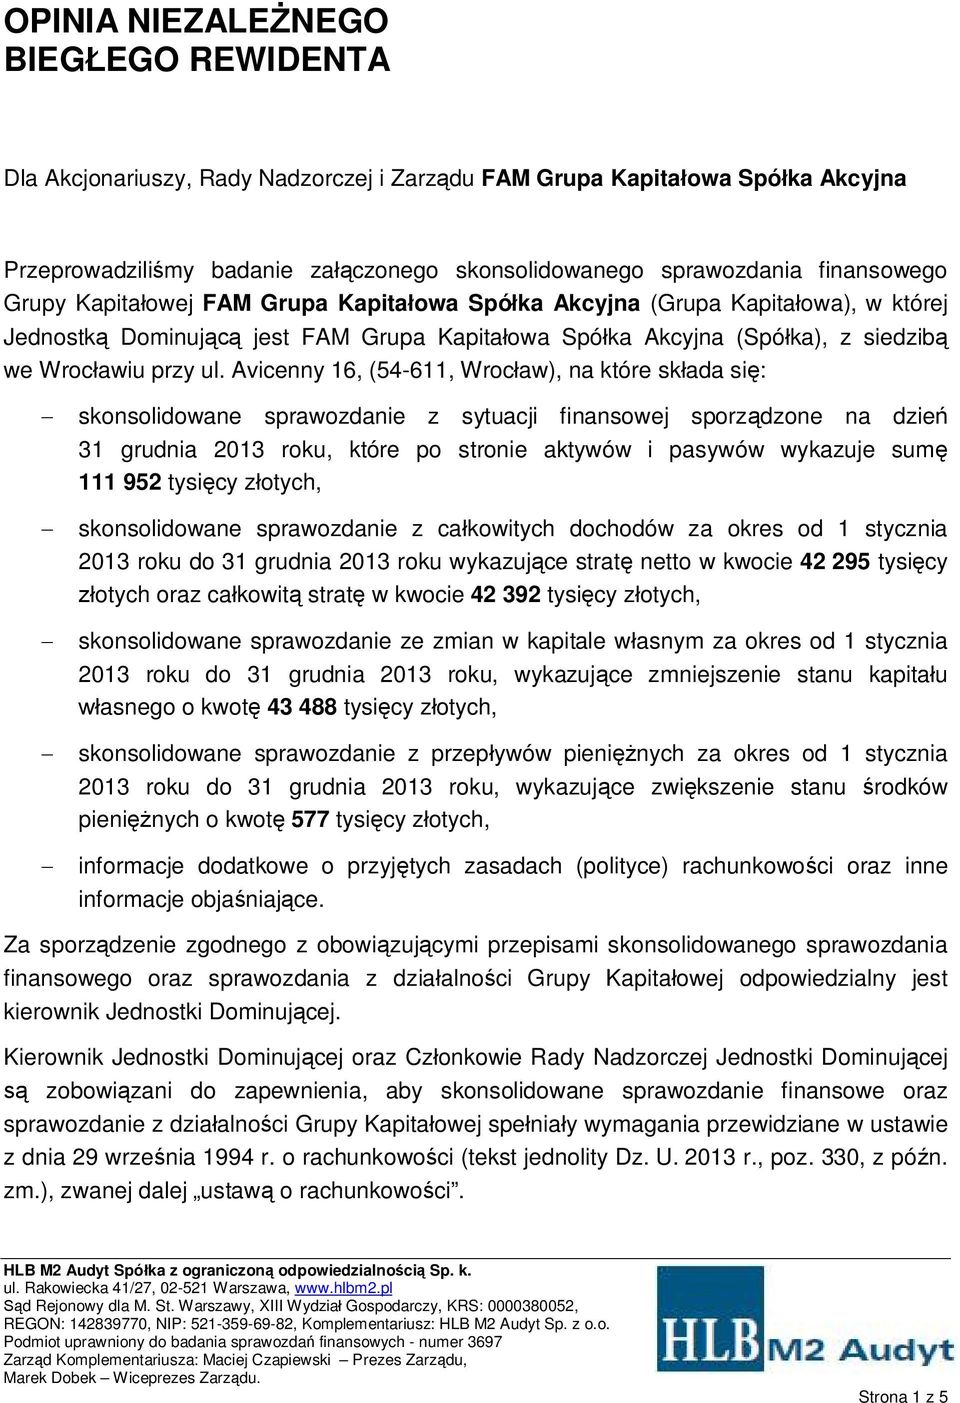 Avicenny 16, (54-611, Wrocaw), na które skada si: skonsolidowane sprawozdanie z sytuacji finansowej sporzdzone na dzie 31 grudnia 2013 roku, które po stronie aktywów i pasywów wykazuje sum 111 952